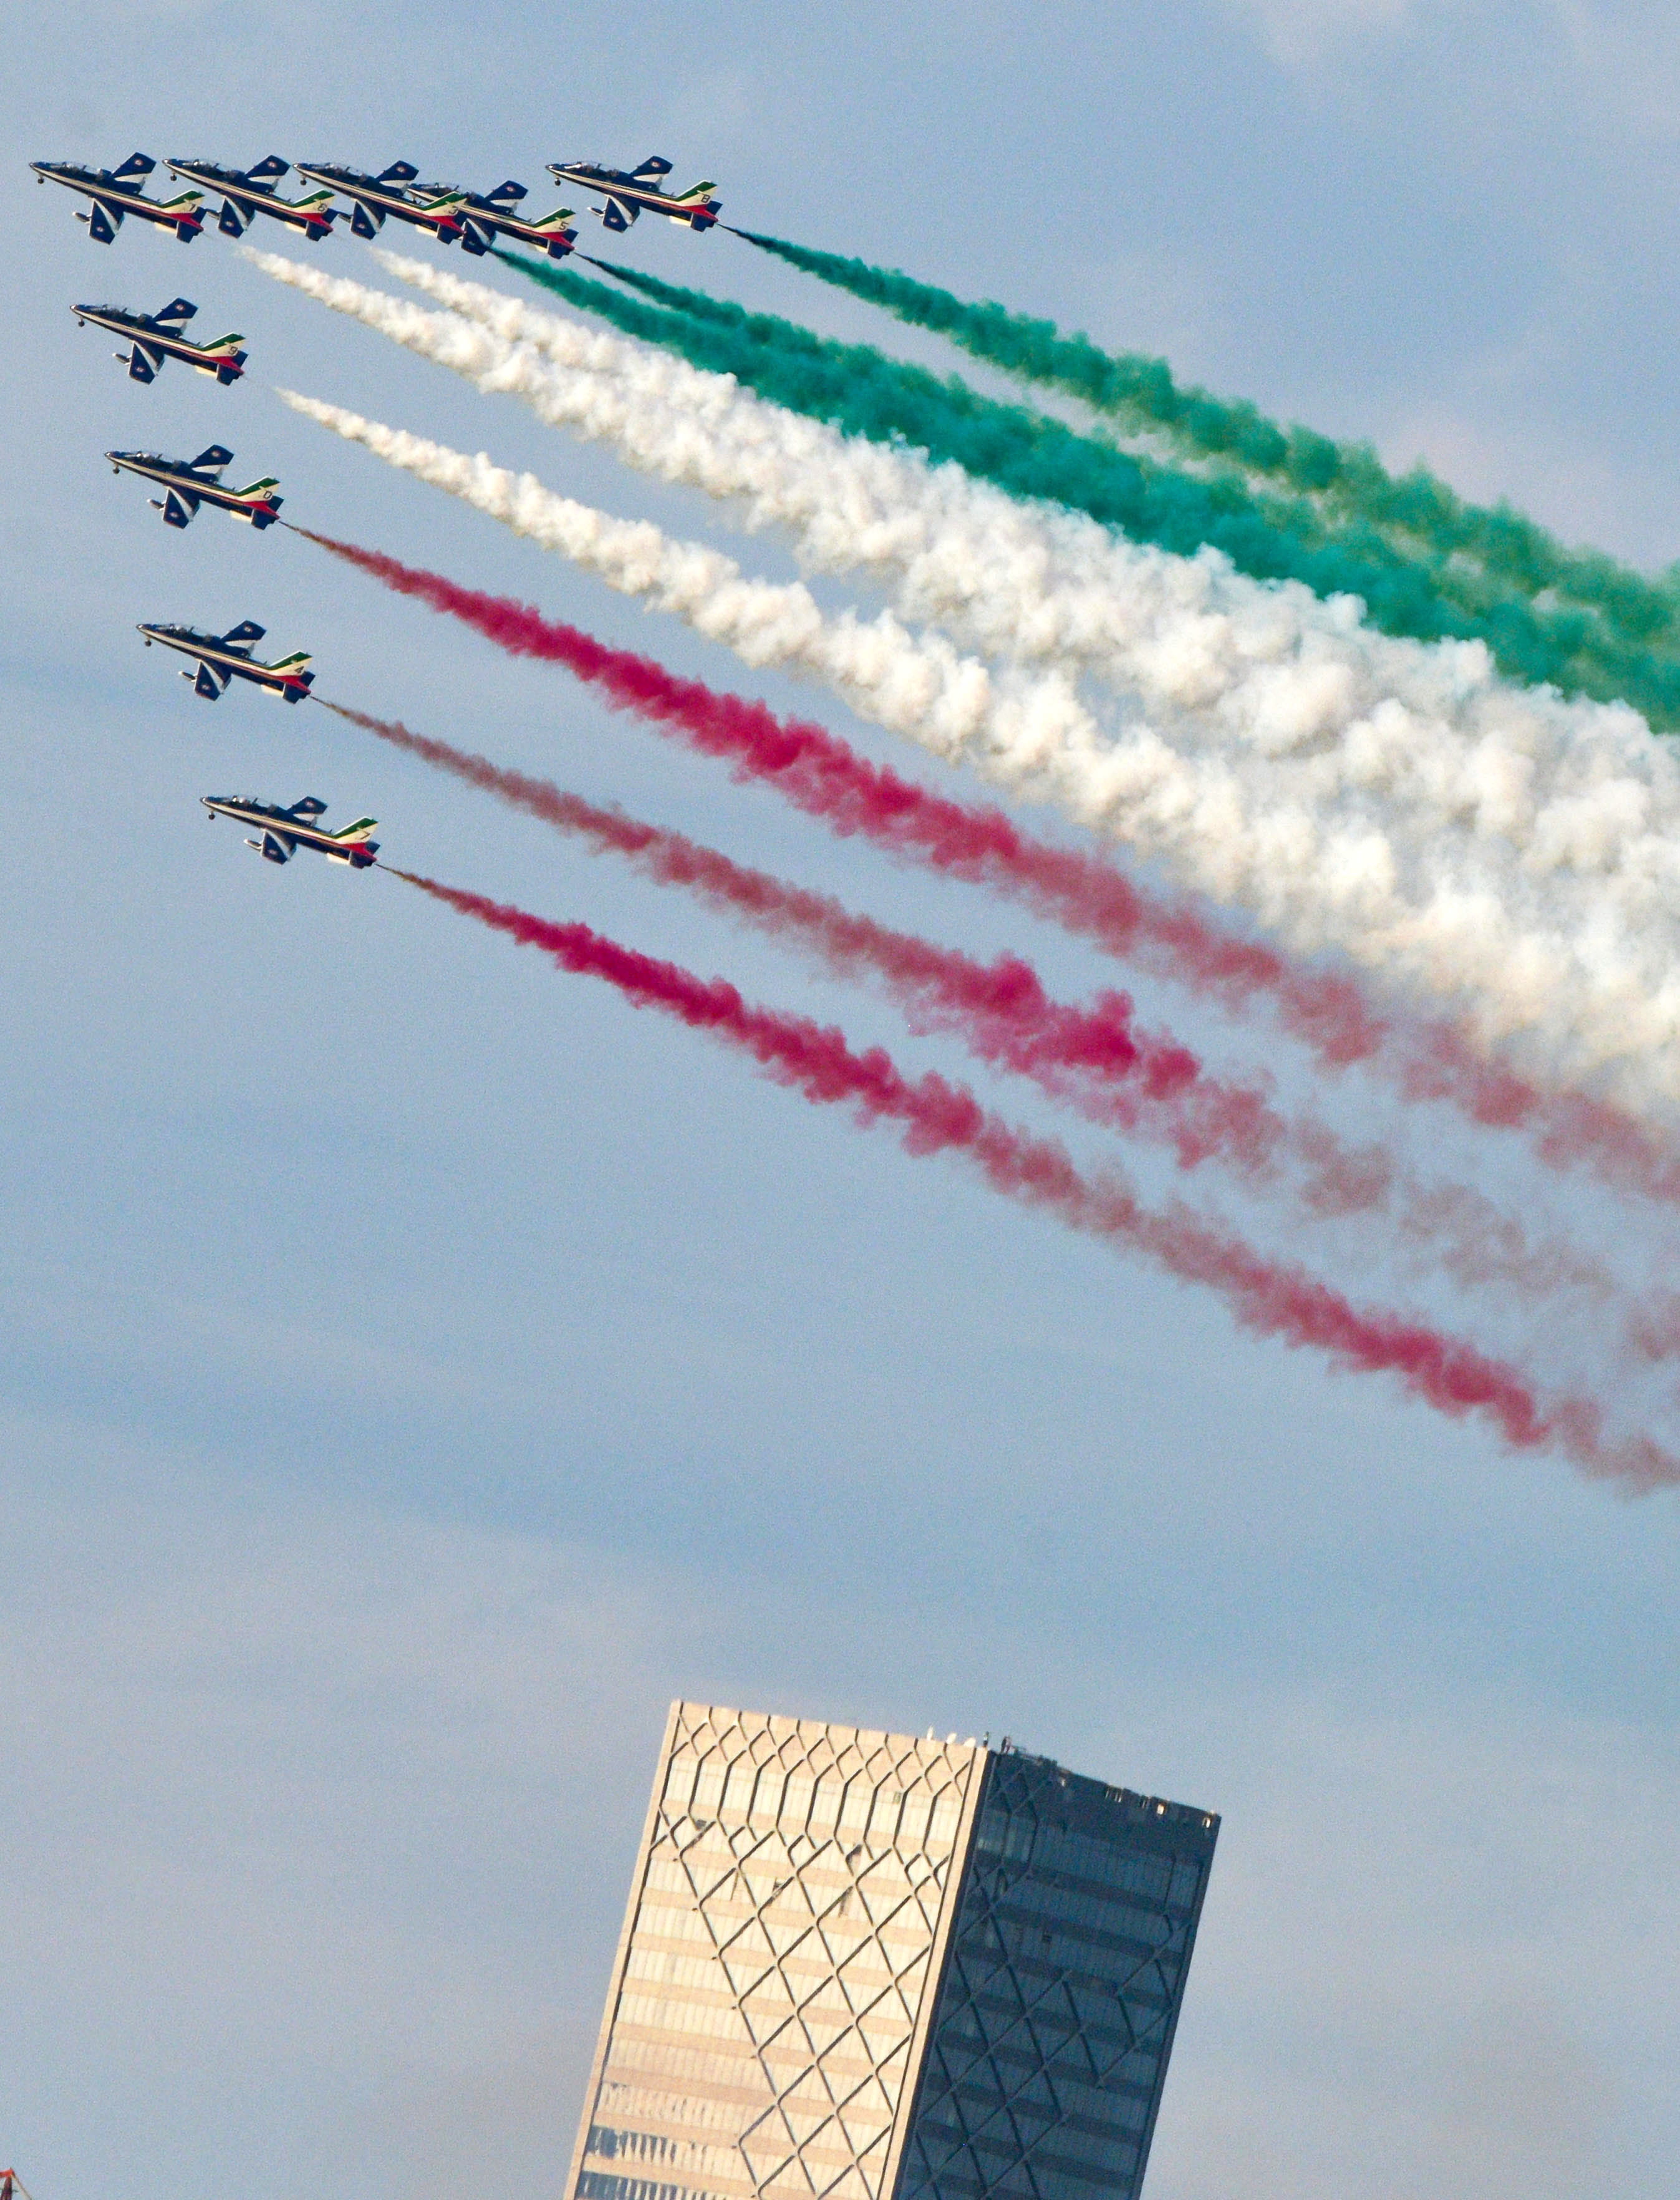 意大利“三色箭”飞行队亮相卡塔尔航展